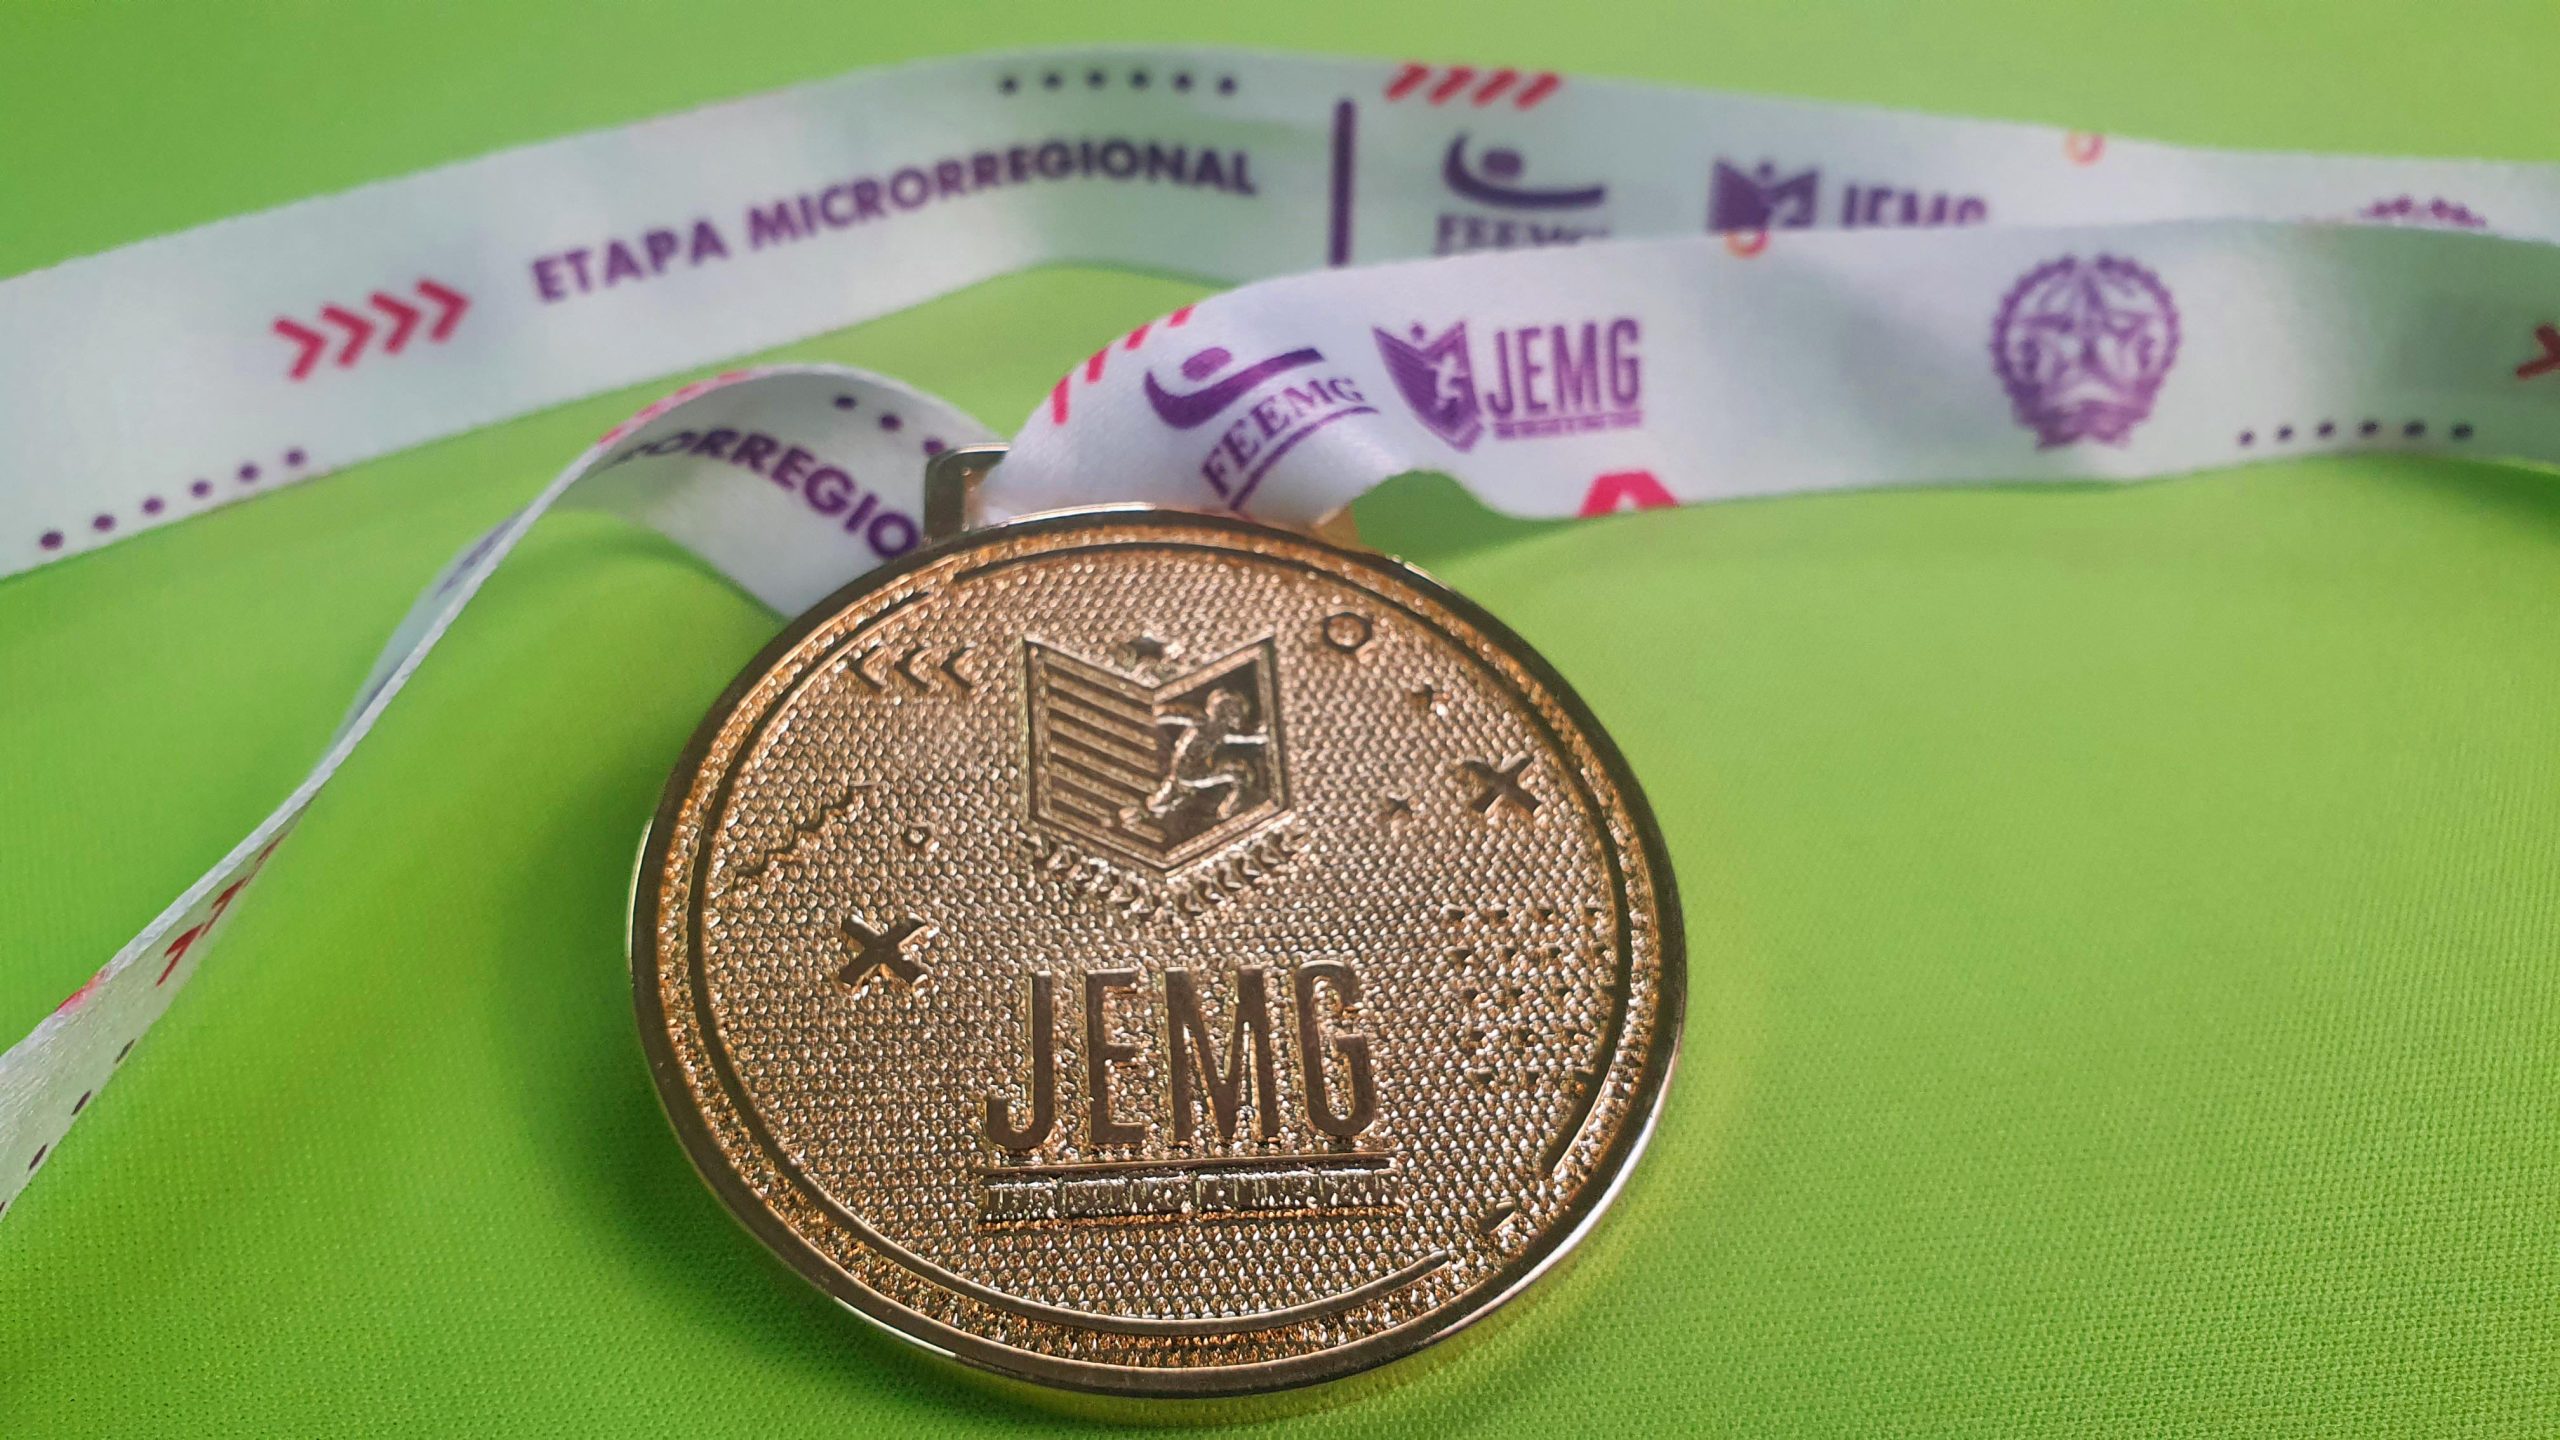 Etapa regional do JEMG 2023 em Almenara-MG rende medalhas para equipes de  Timóteo – Jornal Bairros Net